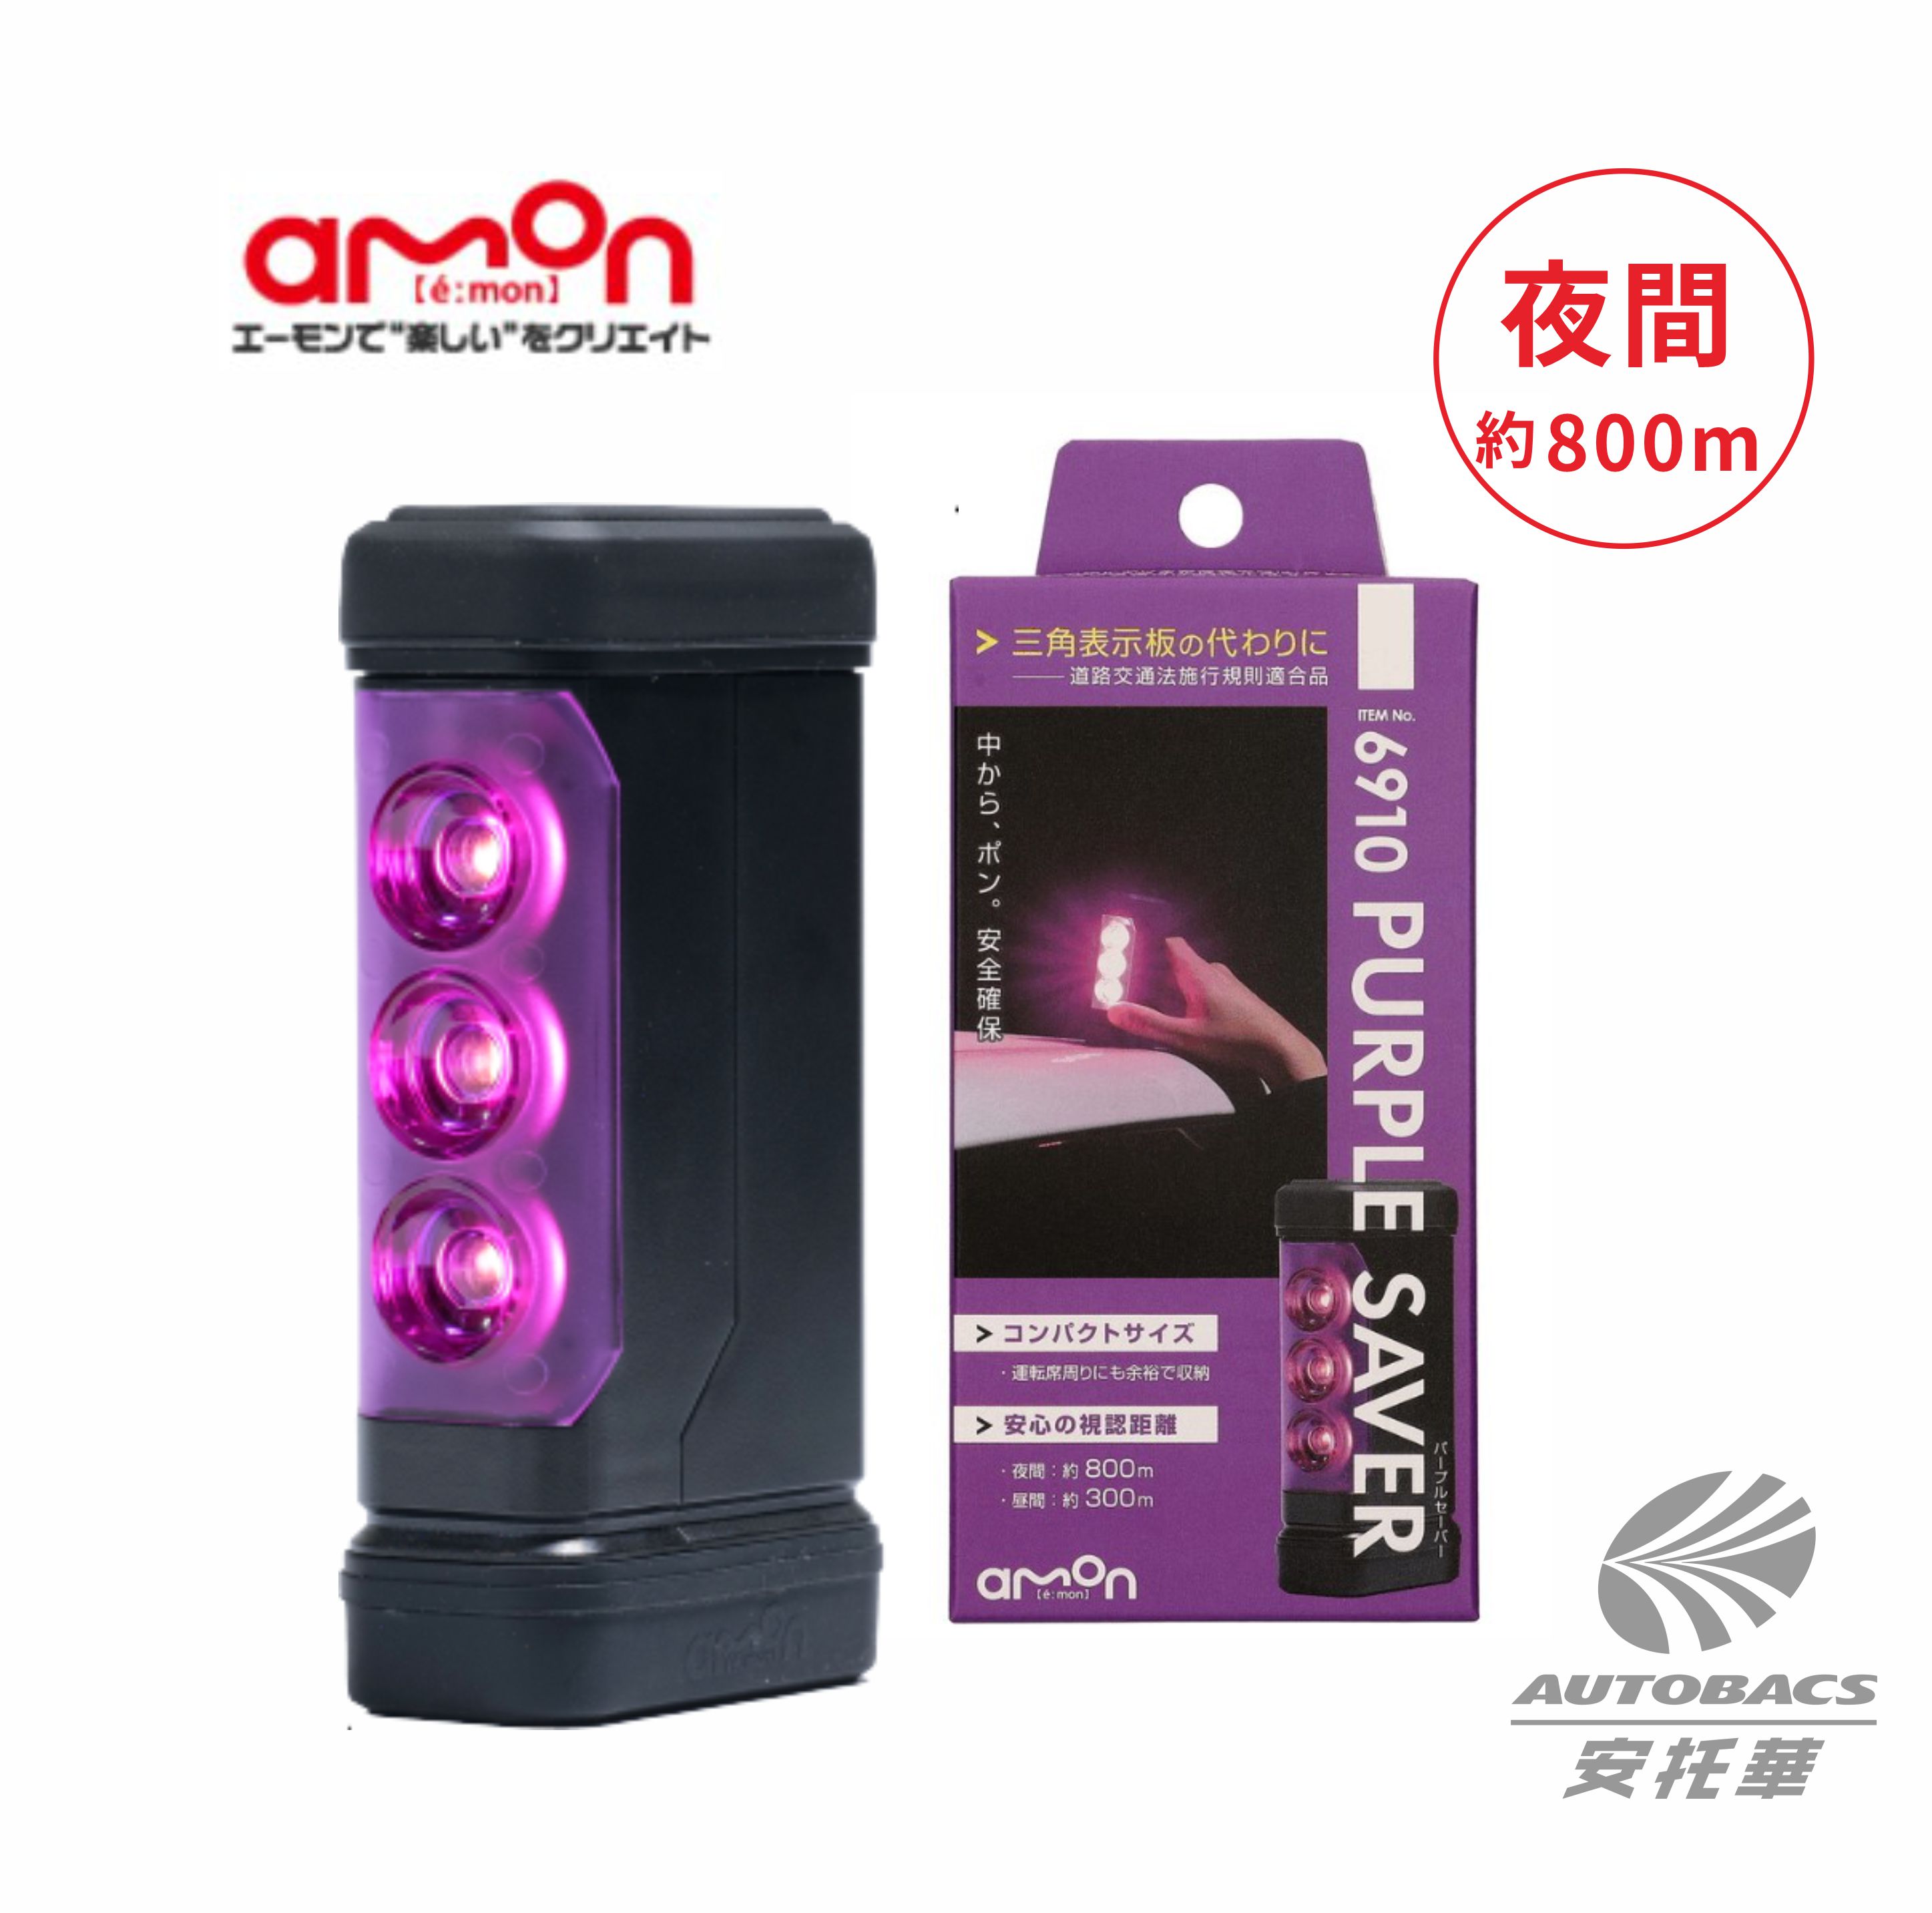 緊急閃光訊號燈6910-紫